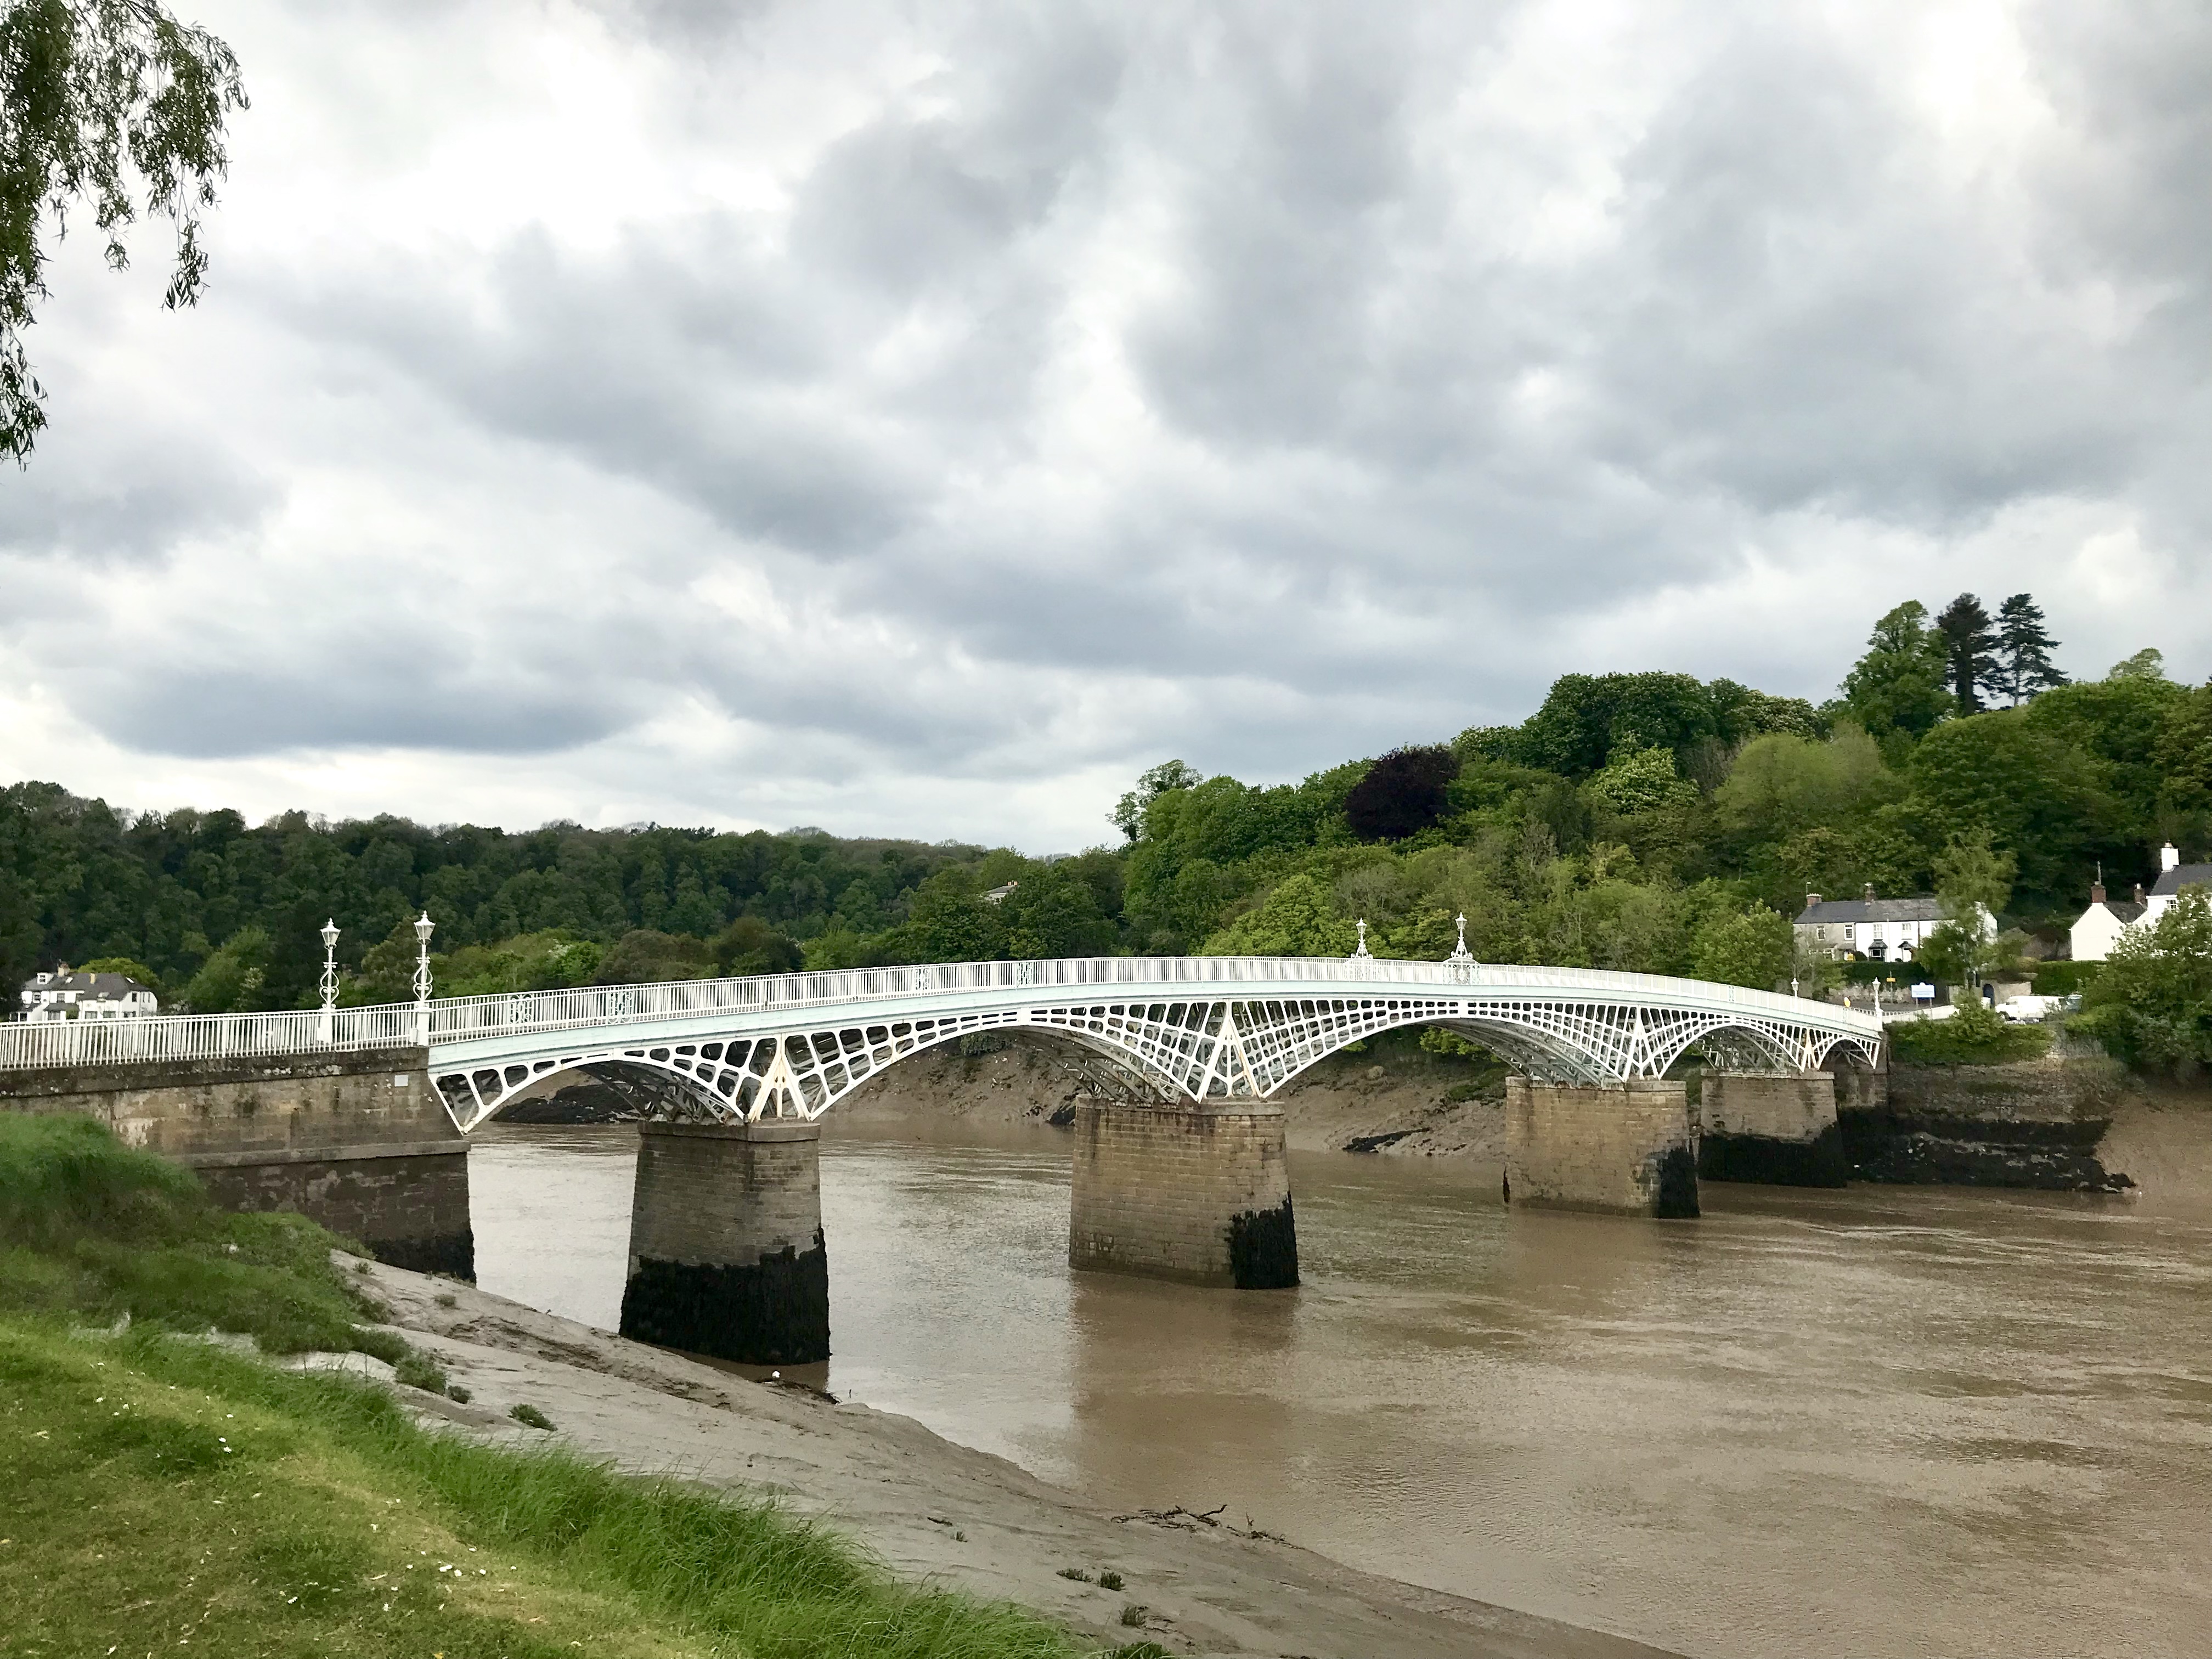 The bridge in Chepstow